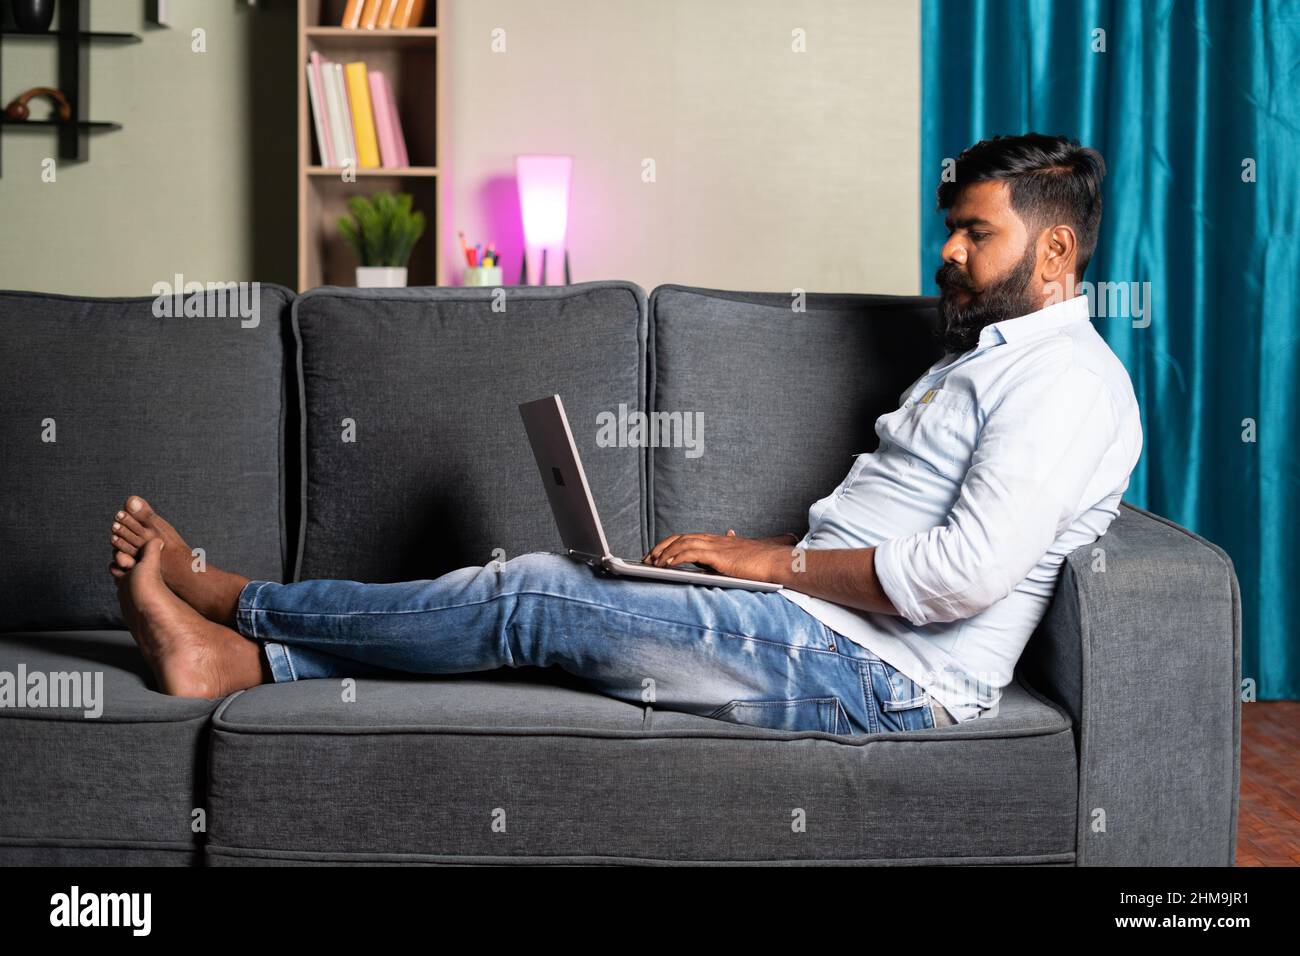 Prise de vue grand angle d'un jeune homme détendu, occupé à utiliser un ordinateur portable assis sur safa à la maison - concept de travail à la maison, nouveau employé normal ou mode de vie professionnel Banque D'Images